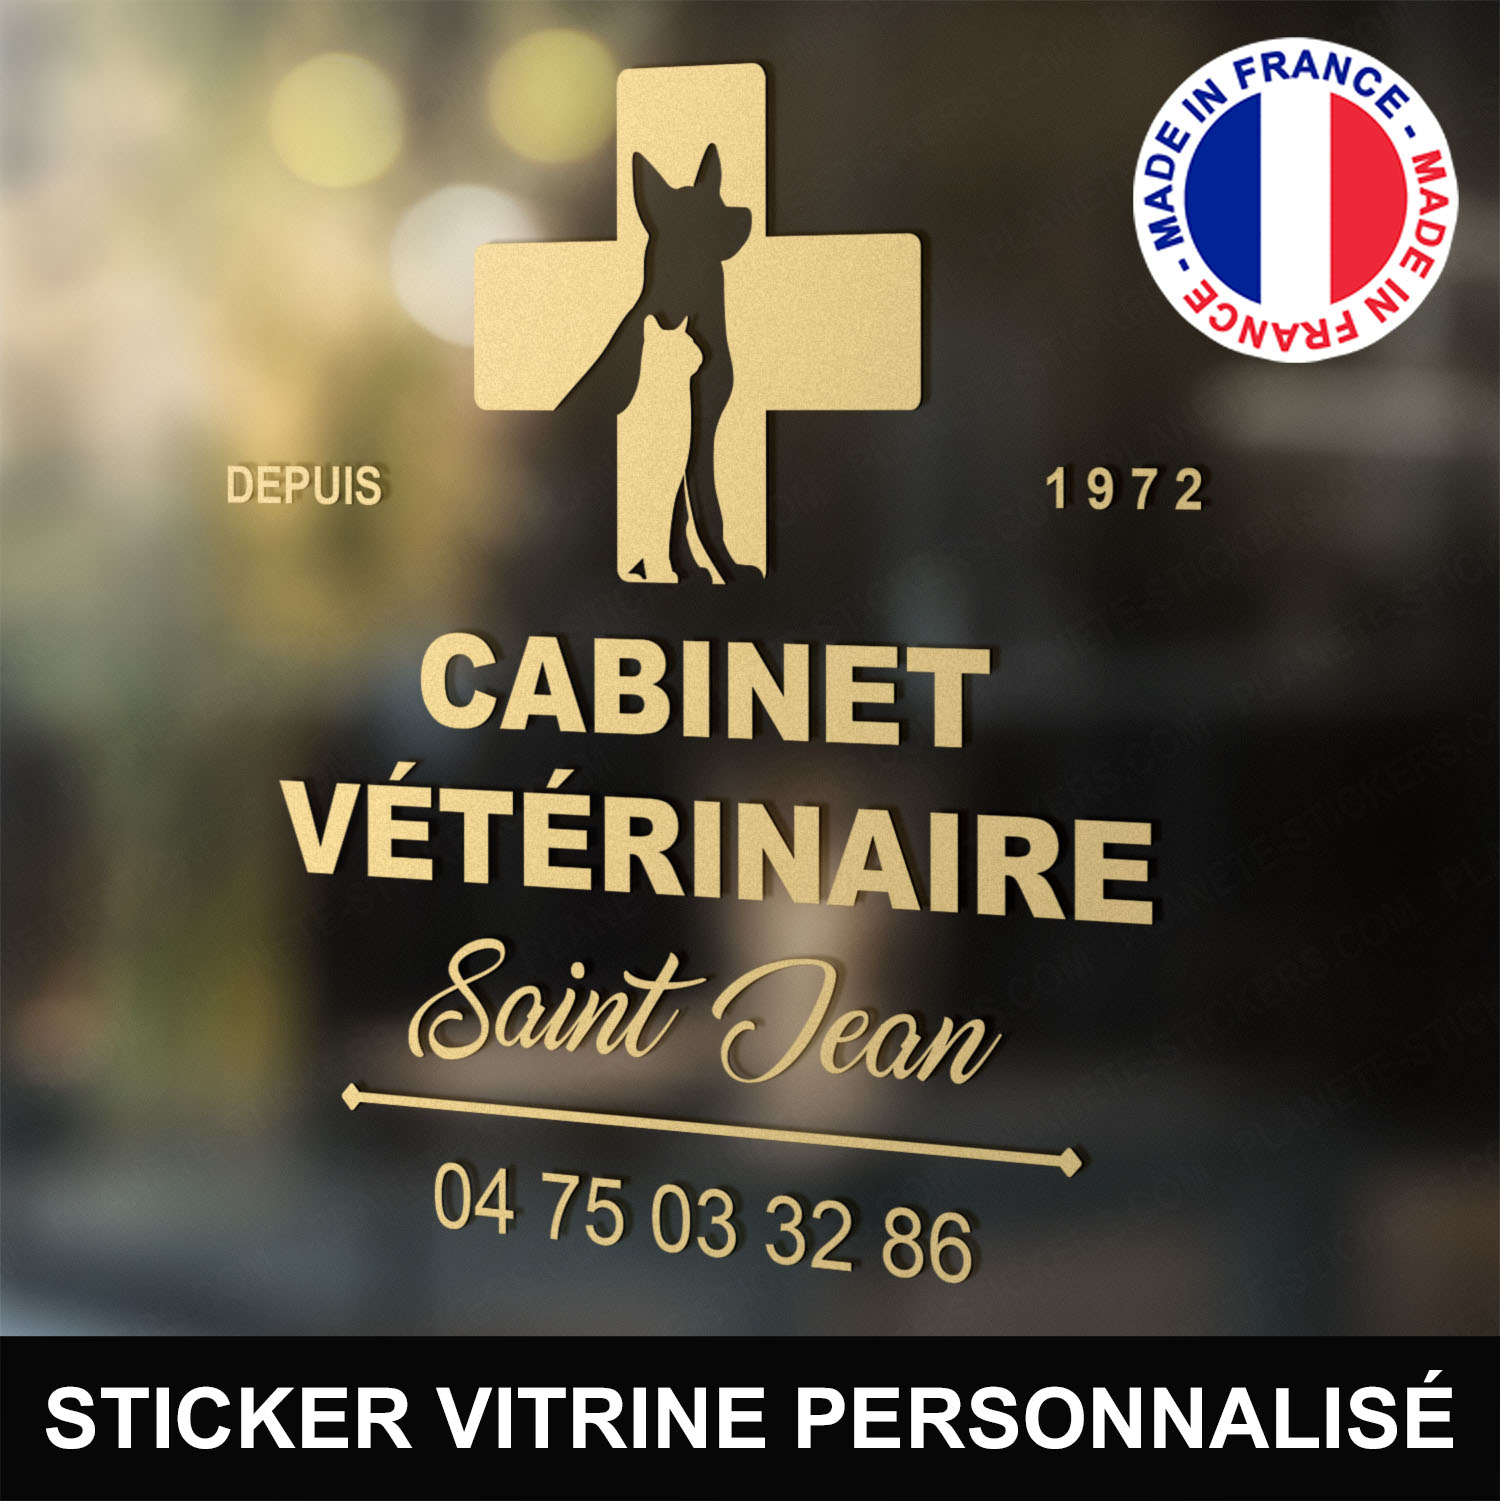 ref2veterinairevitrine-stickers-cabinet-vétérinaire-vitrine-sticker-personnalisé-autocollant-pro-veterinaire-professionnel